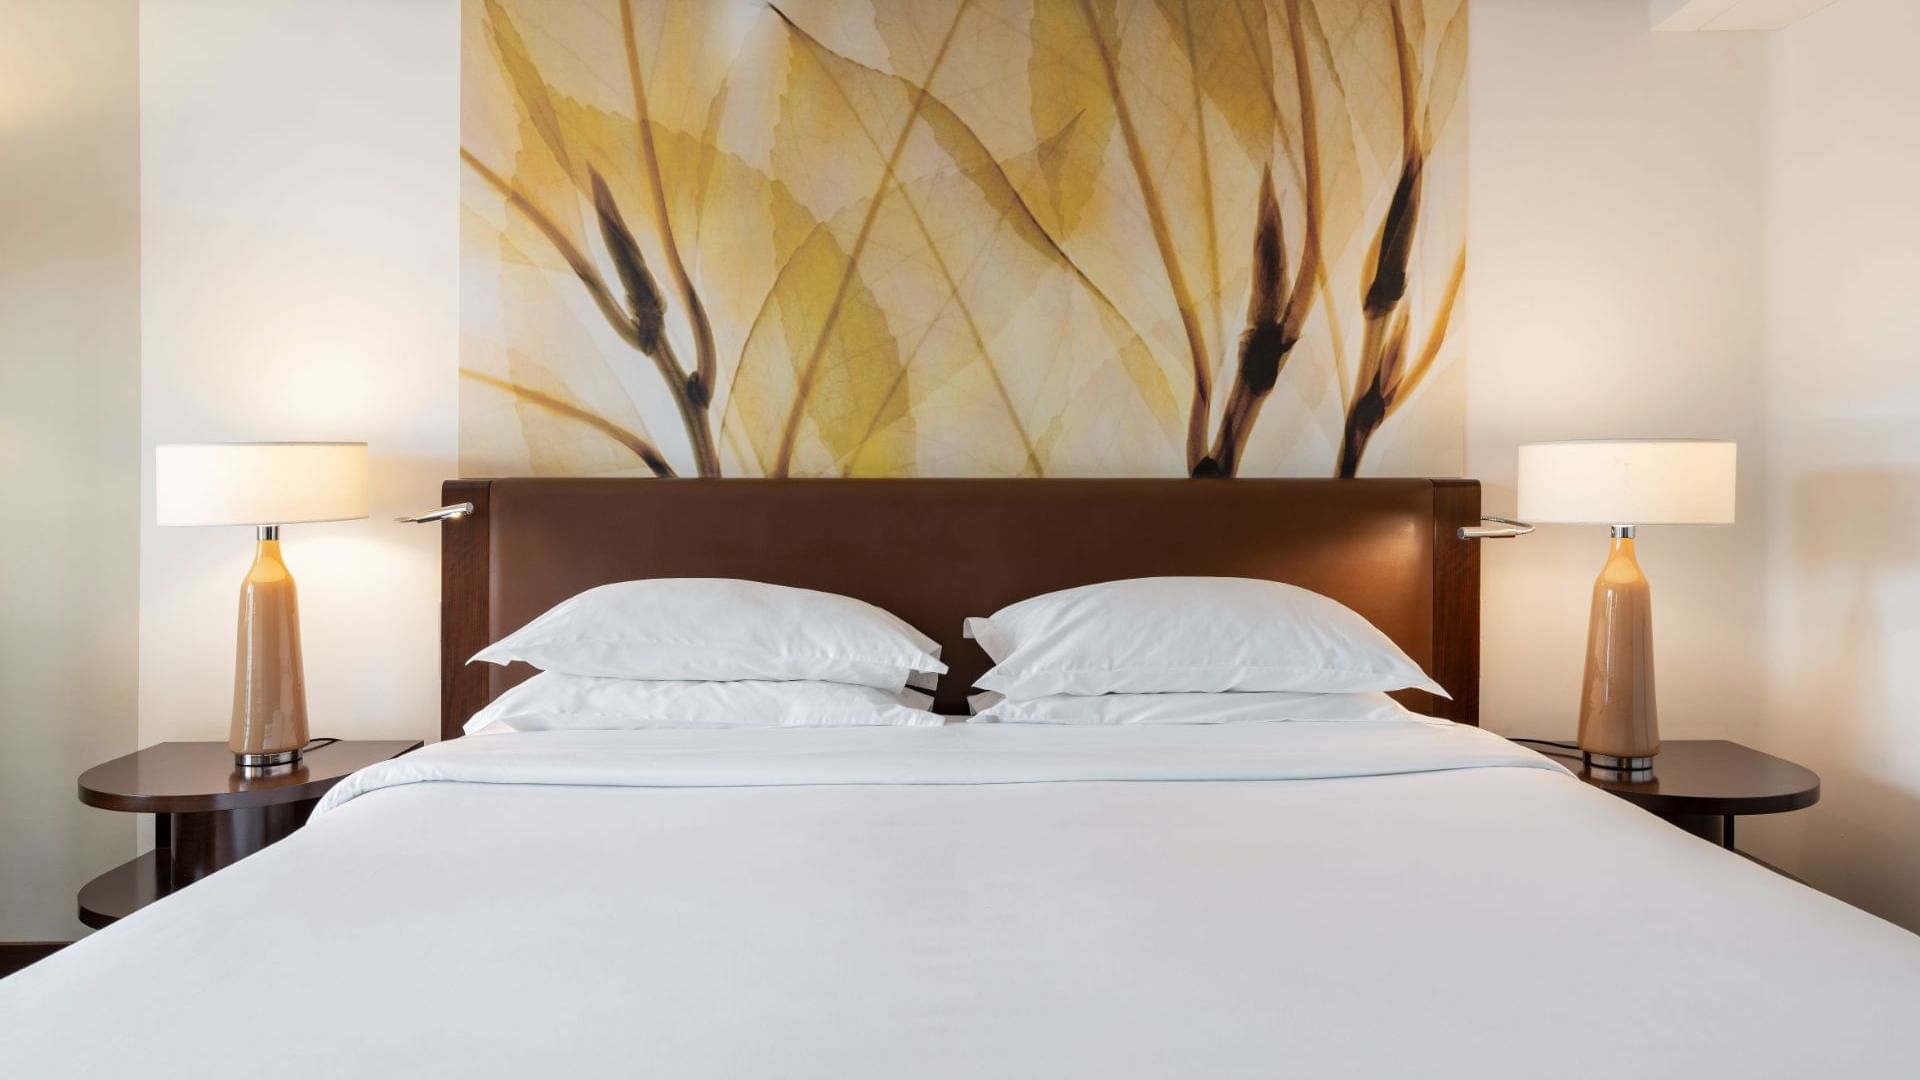 Bed & nightstands in Garden View Room at Bensaude Hotels